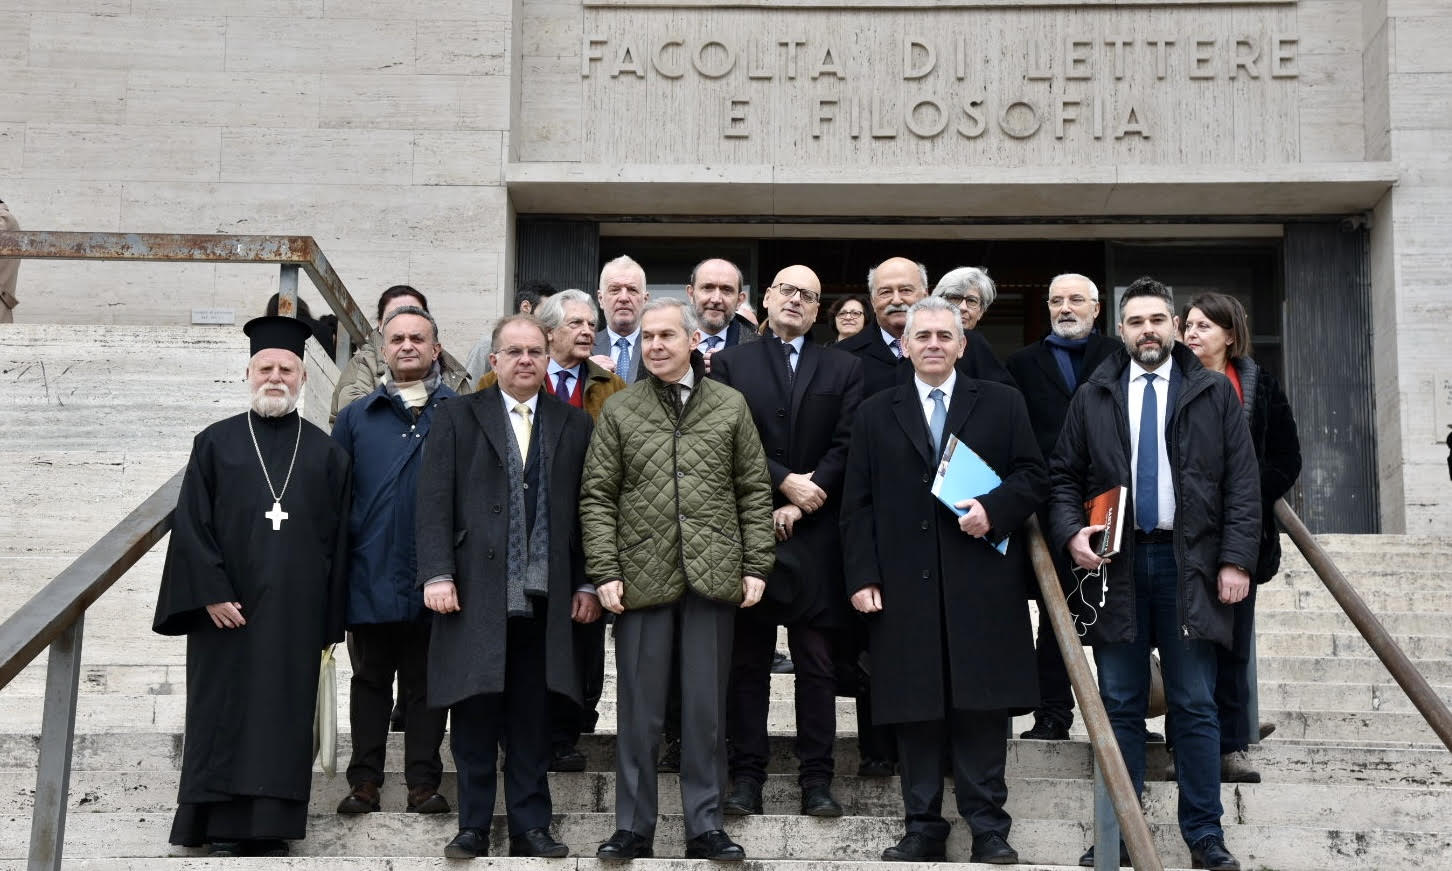 Ο Μάξιμος Χαρακόπουλος με τους καθηγητές του πανεπιστημίου και την αντιπροσωπεία της ΔΣΟ στην είσοδο του ιδρύματος 